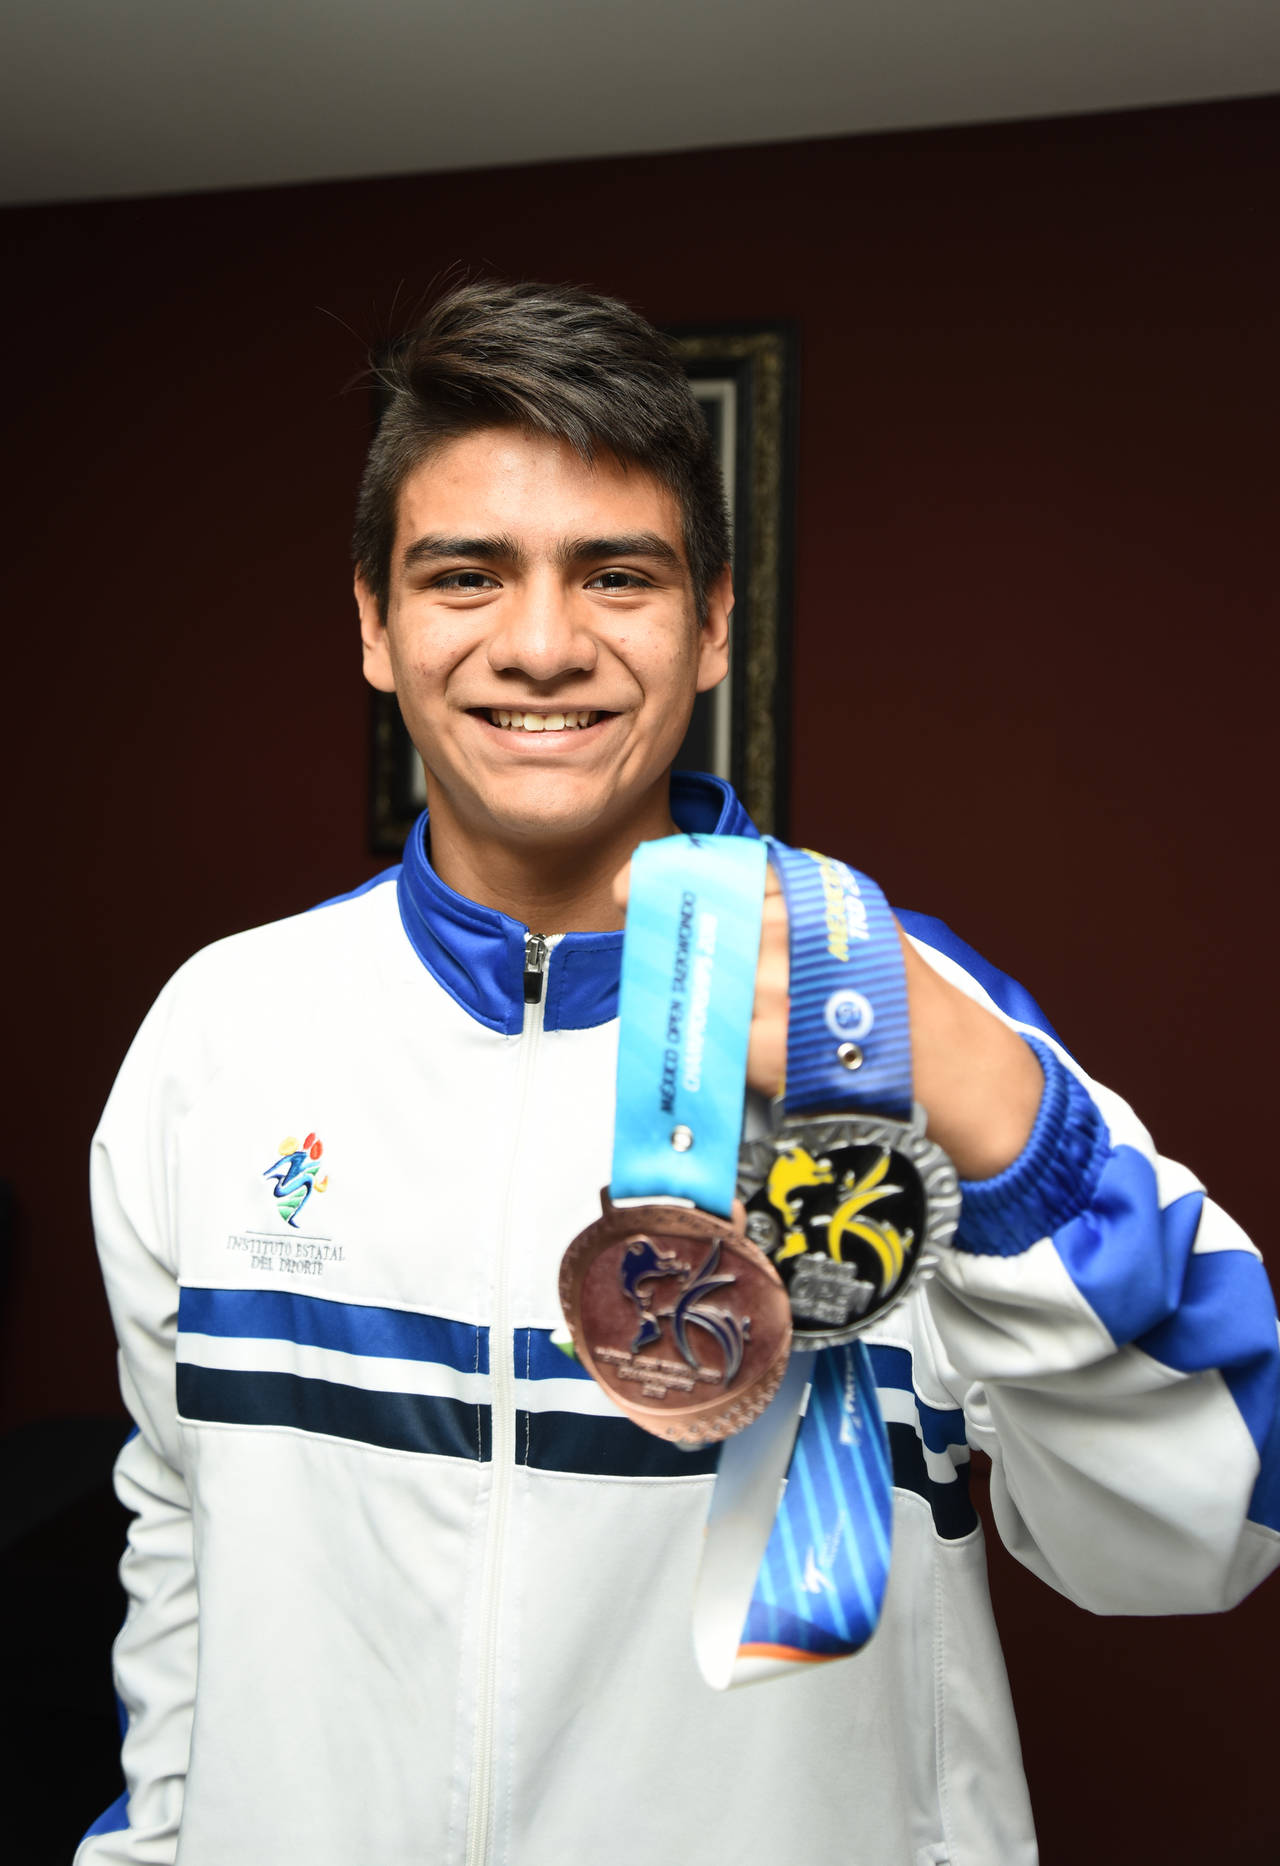 El juvenil lagunero es actualmente el número 1 en el ránking nacional de la Federación Mexicana de tae kwon do, en categoría Cadete. Lagunero brilla en torneo internacional de tae kwon do